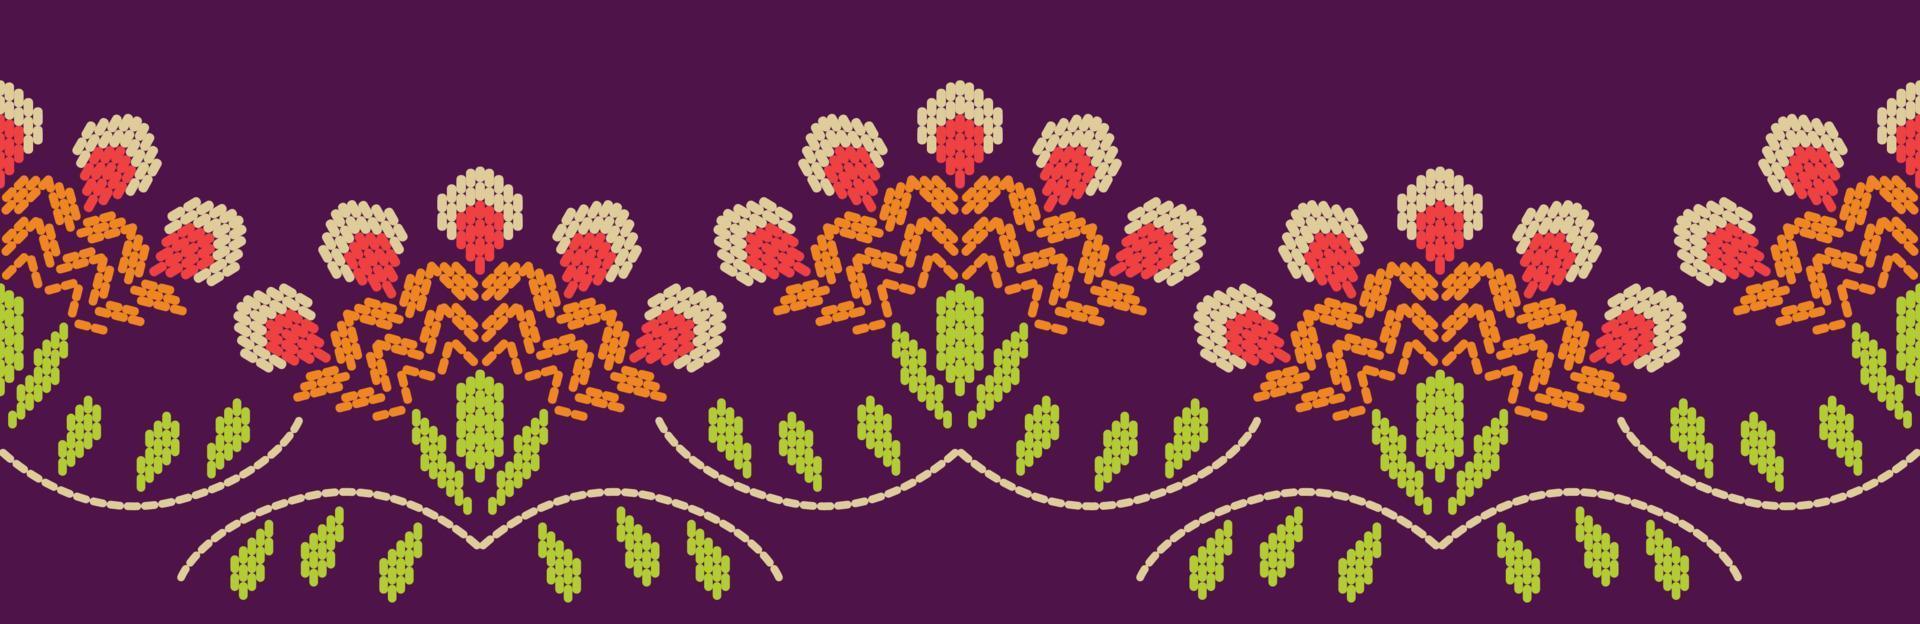 motivo fronteira artesanal étnica bela arte do bordado. padrão floral de folha étnica. bordados folclóricos, estilo mexicano, peruano, indiano, asiático, marroquino, peru e uzbeque. linda decoração de flores. vetor